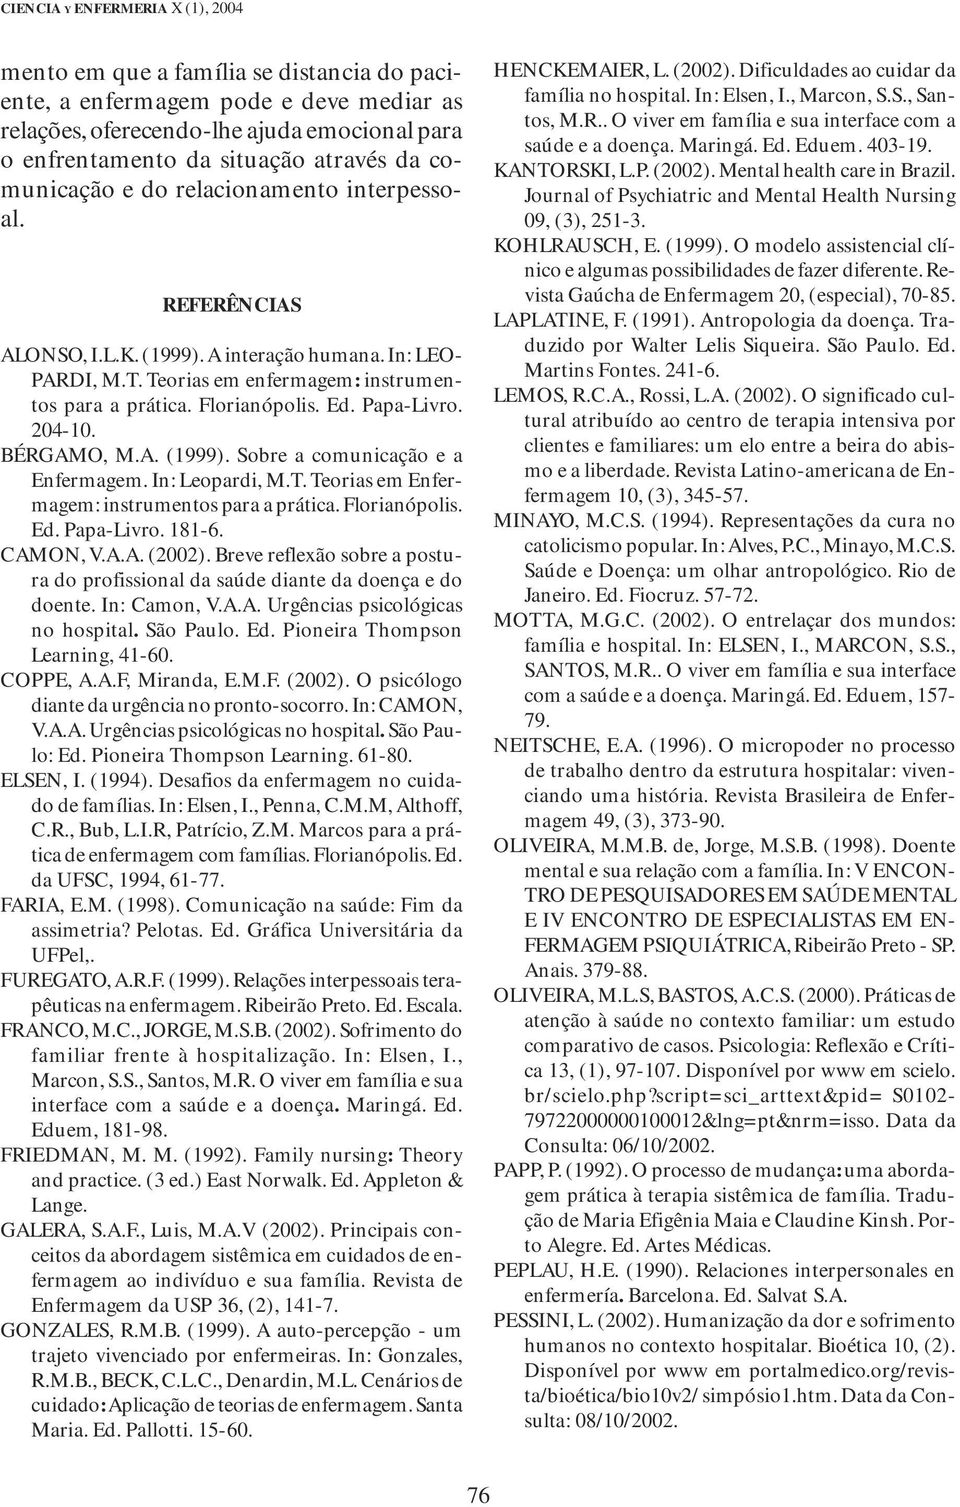 Papa-Livro. 204-10. BÉRGAMO, M.A. (1999). Sobre a comunicação e a Enfermagem. In: Leopardi, M.T. Teorias em Enfermagem: instrumentos para a prática. Florianópolis. Ed. Papa-Livro. 181-6. CAMON, V.A.A. (2002).